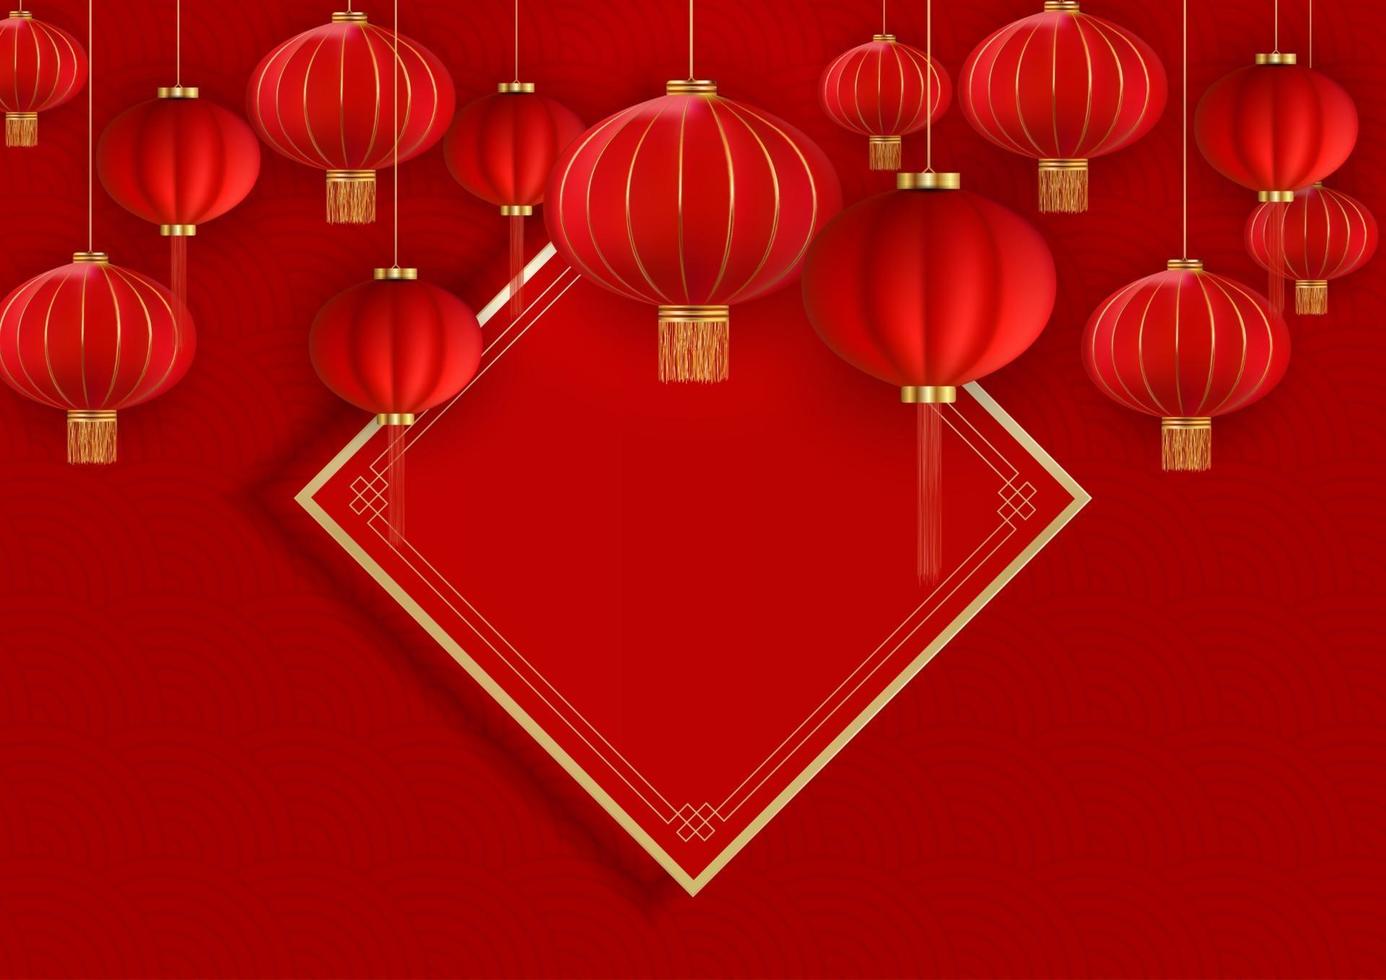 fond de vacances joyeux nouvel an chinois. illustration vectorielle eps10 vecteur